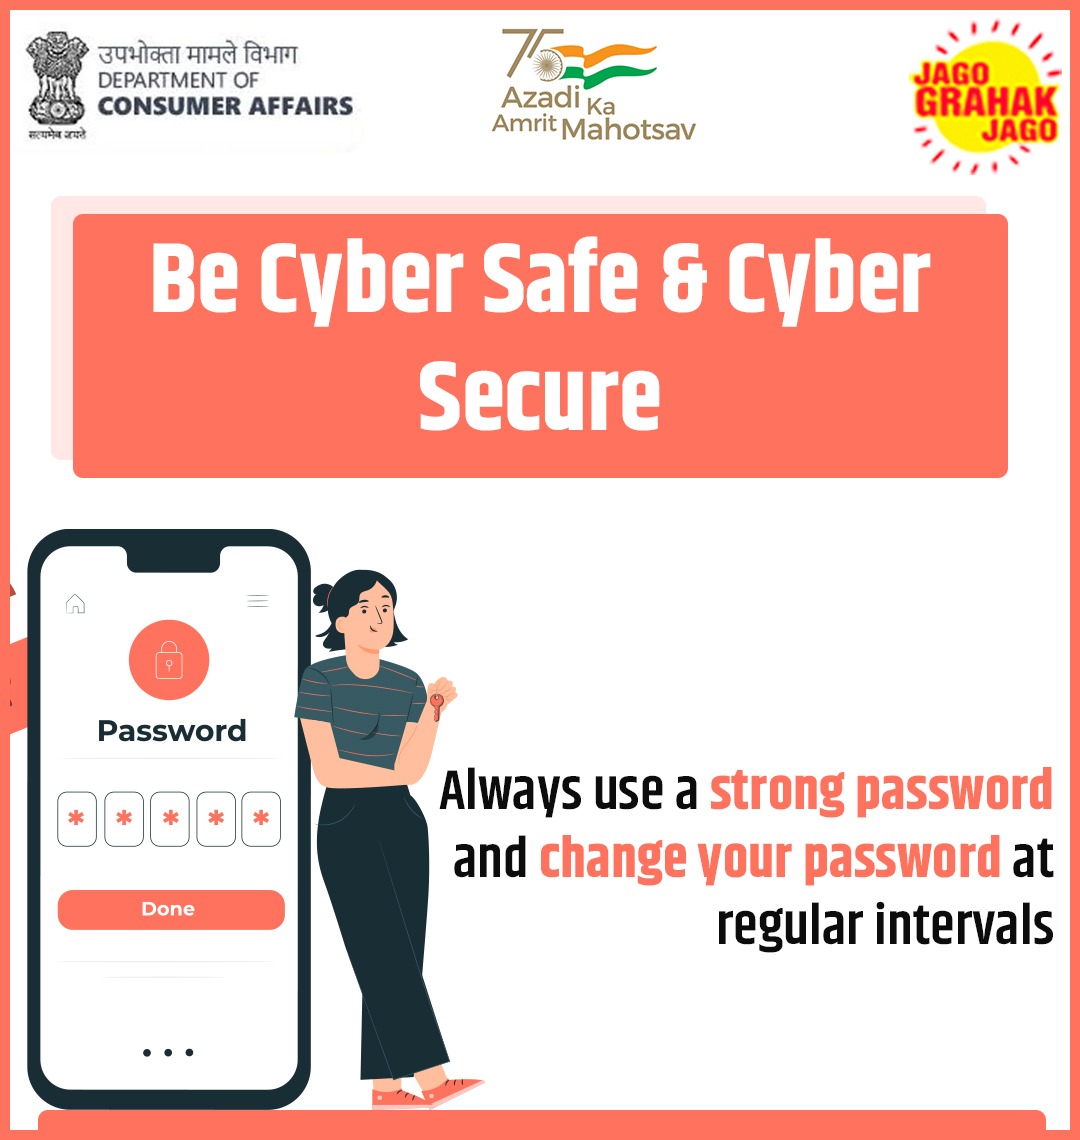 Always use a strong password and change your password at regular intervals. #JagoGrahakJago #cyberattacks #cyber #consumerprotection #awareness #AzadiKaAmritMahotsav @PiyushGoyal @SadhviNiranjan @AshwiniKChoubey